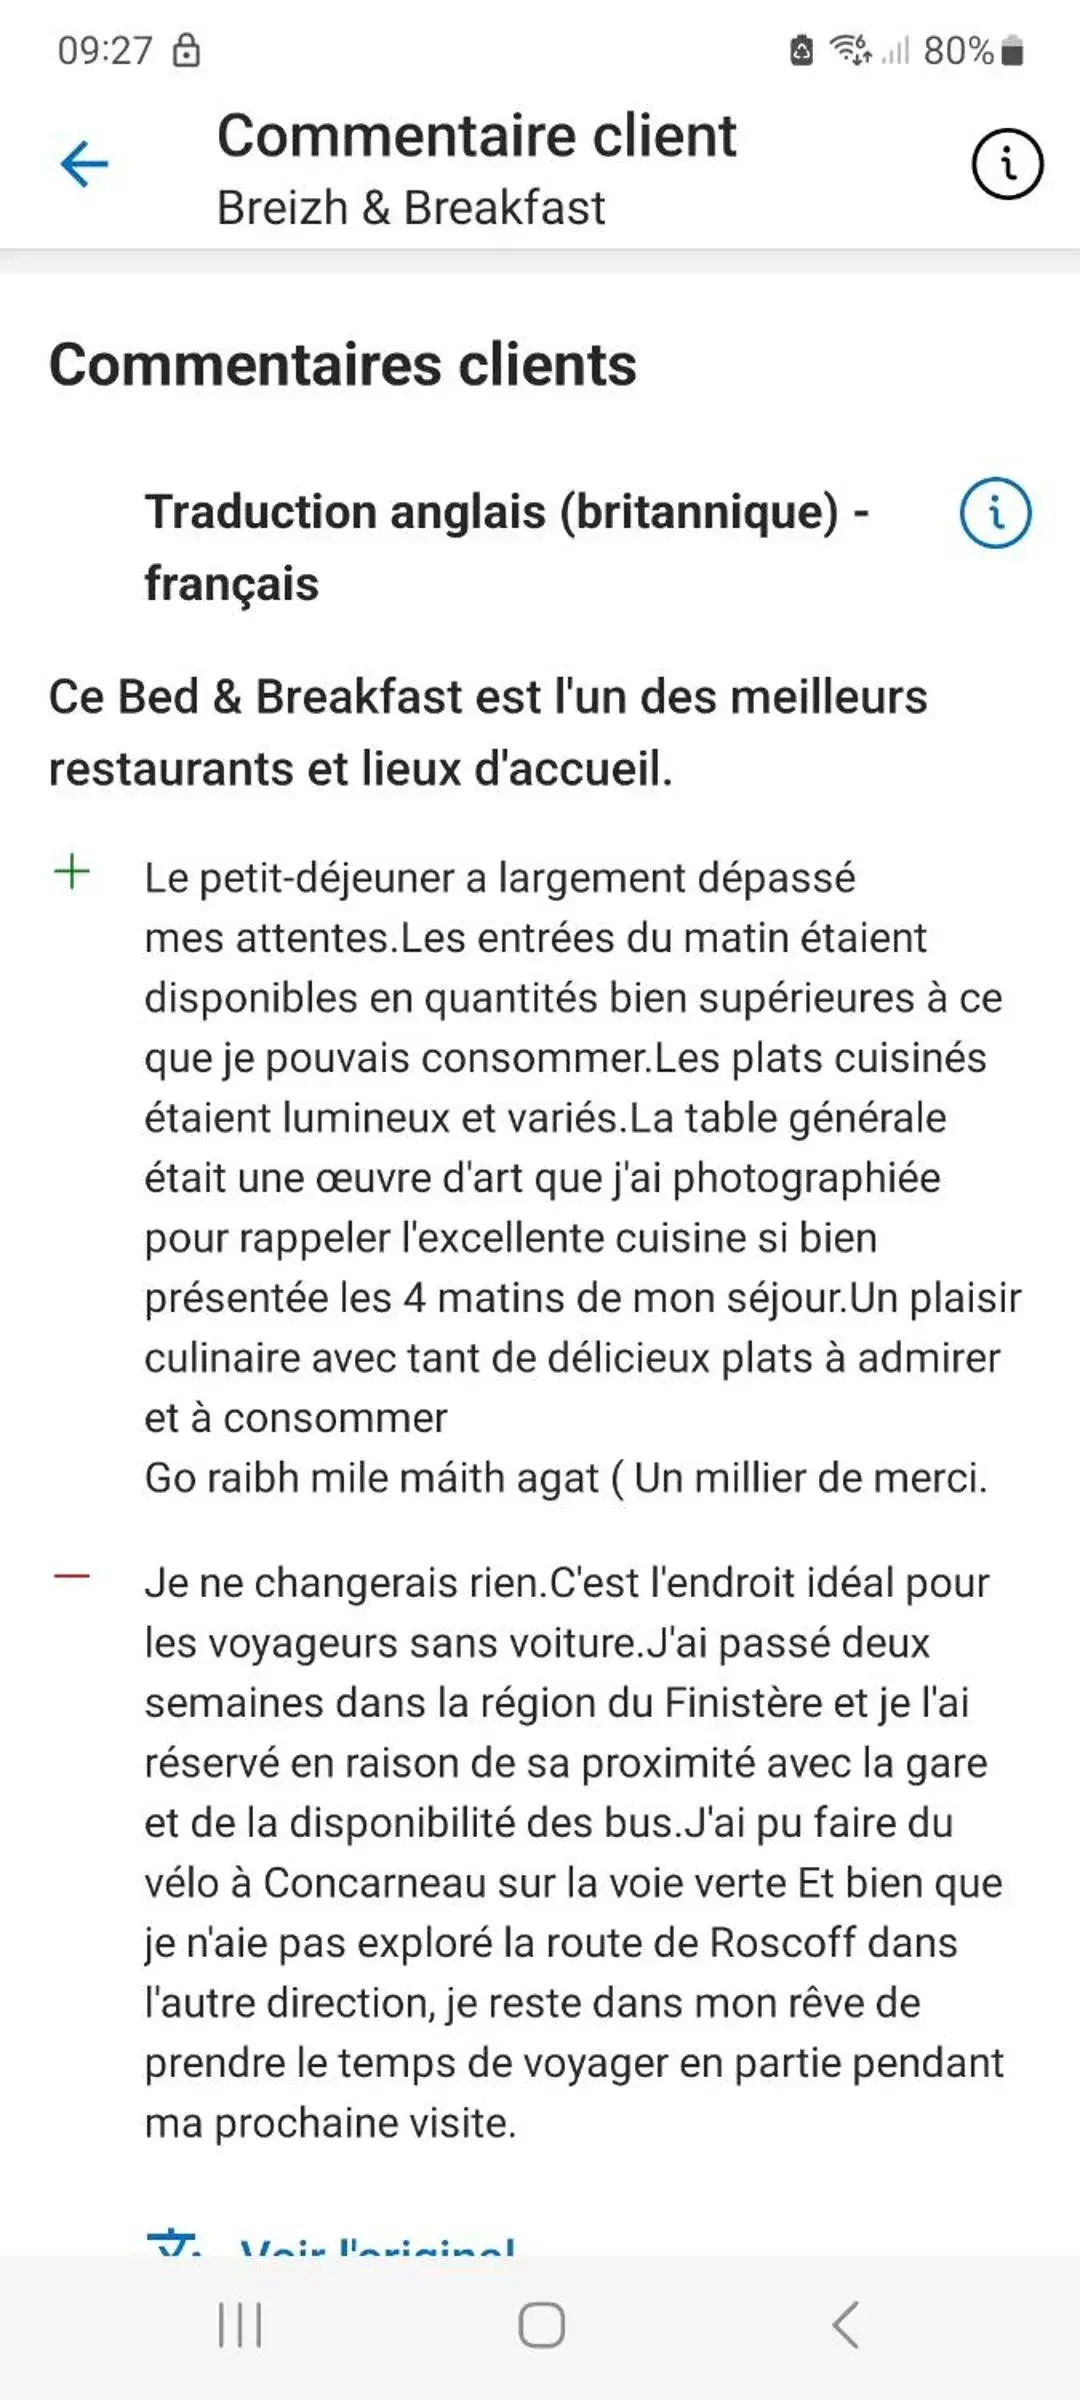 Breizh & Breakfast